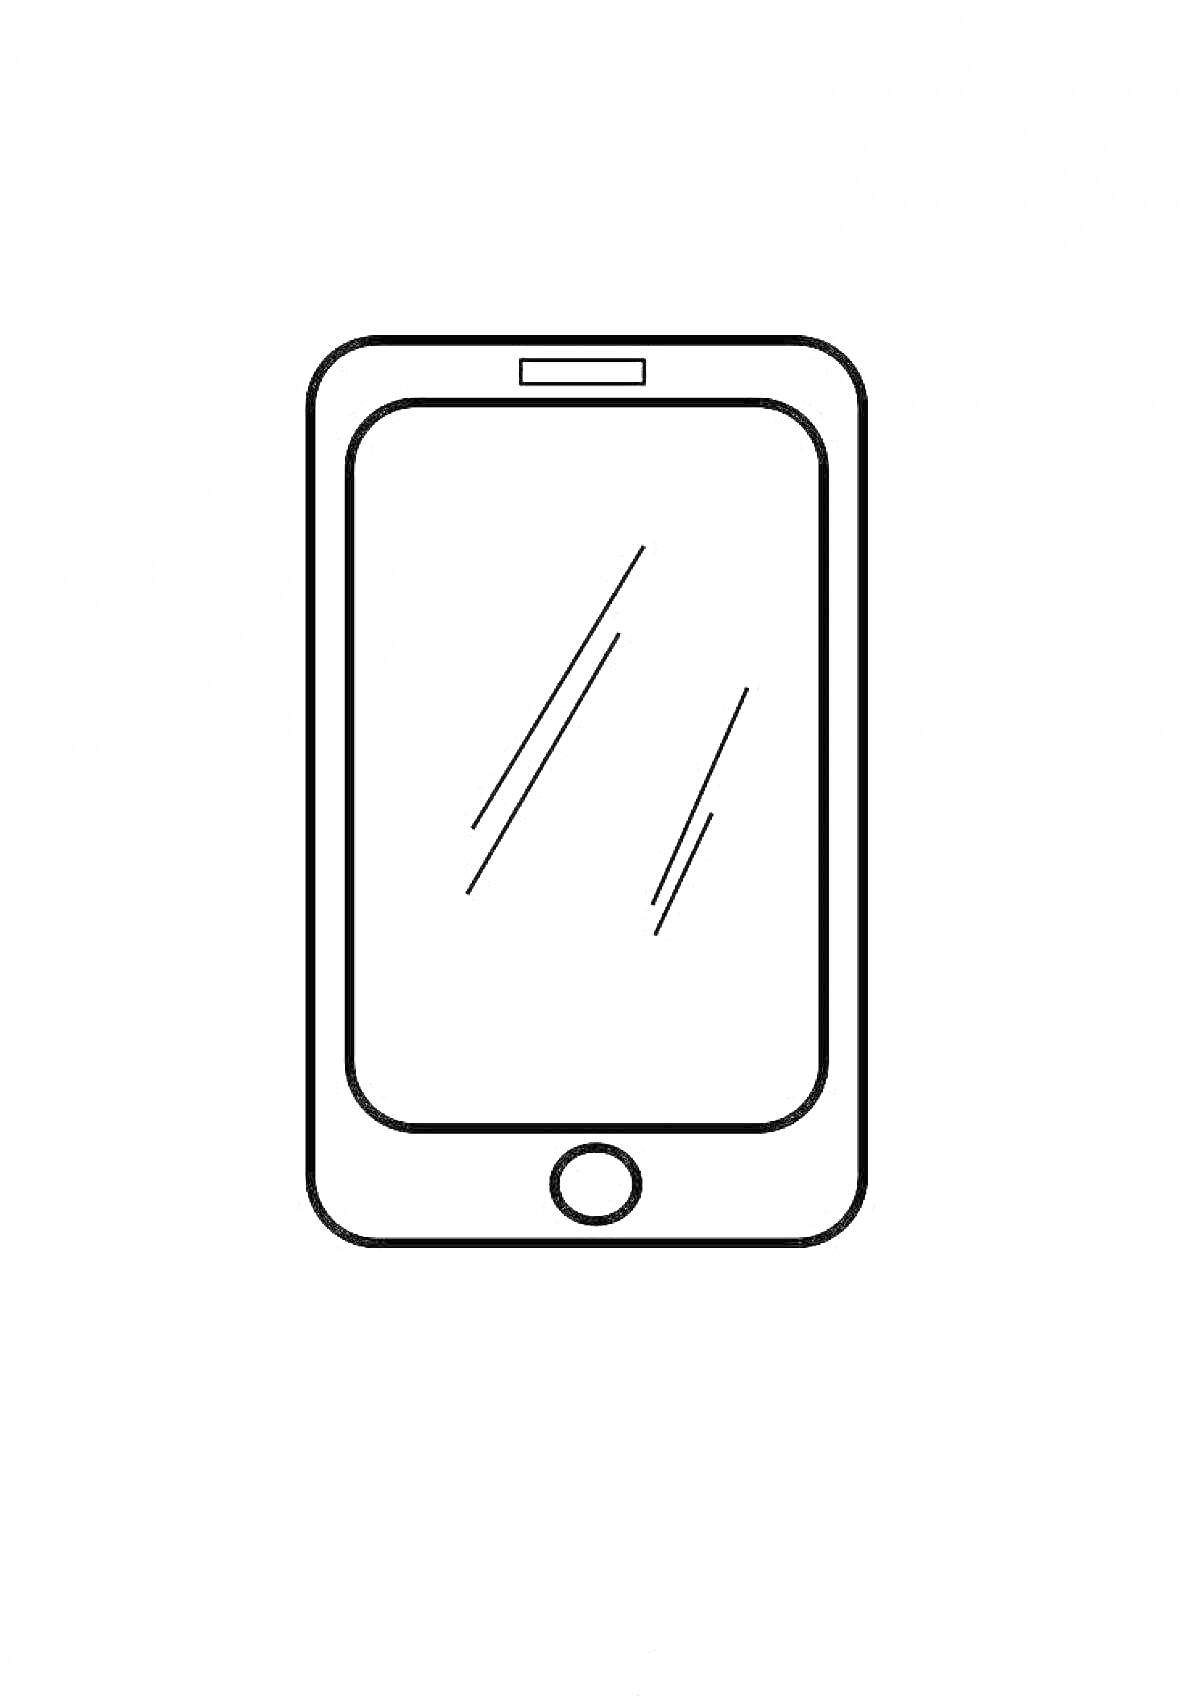 Раскраска смартфона с экраном, кнопкой и динамиком